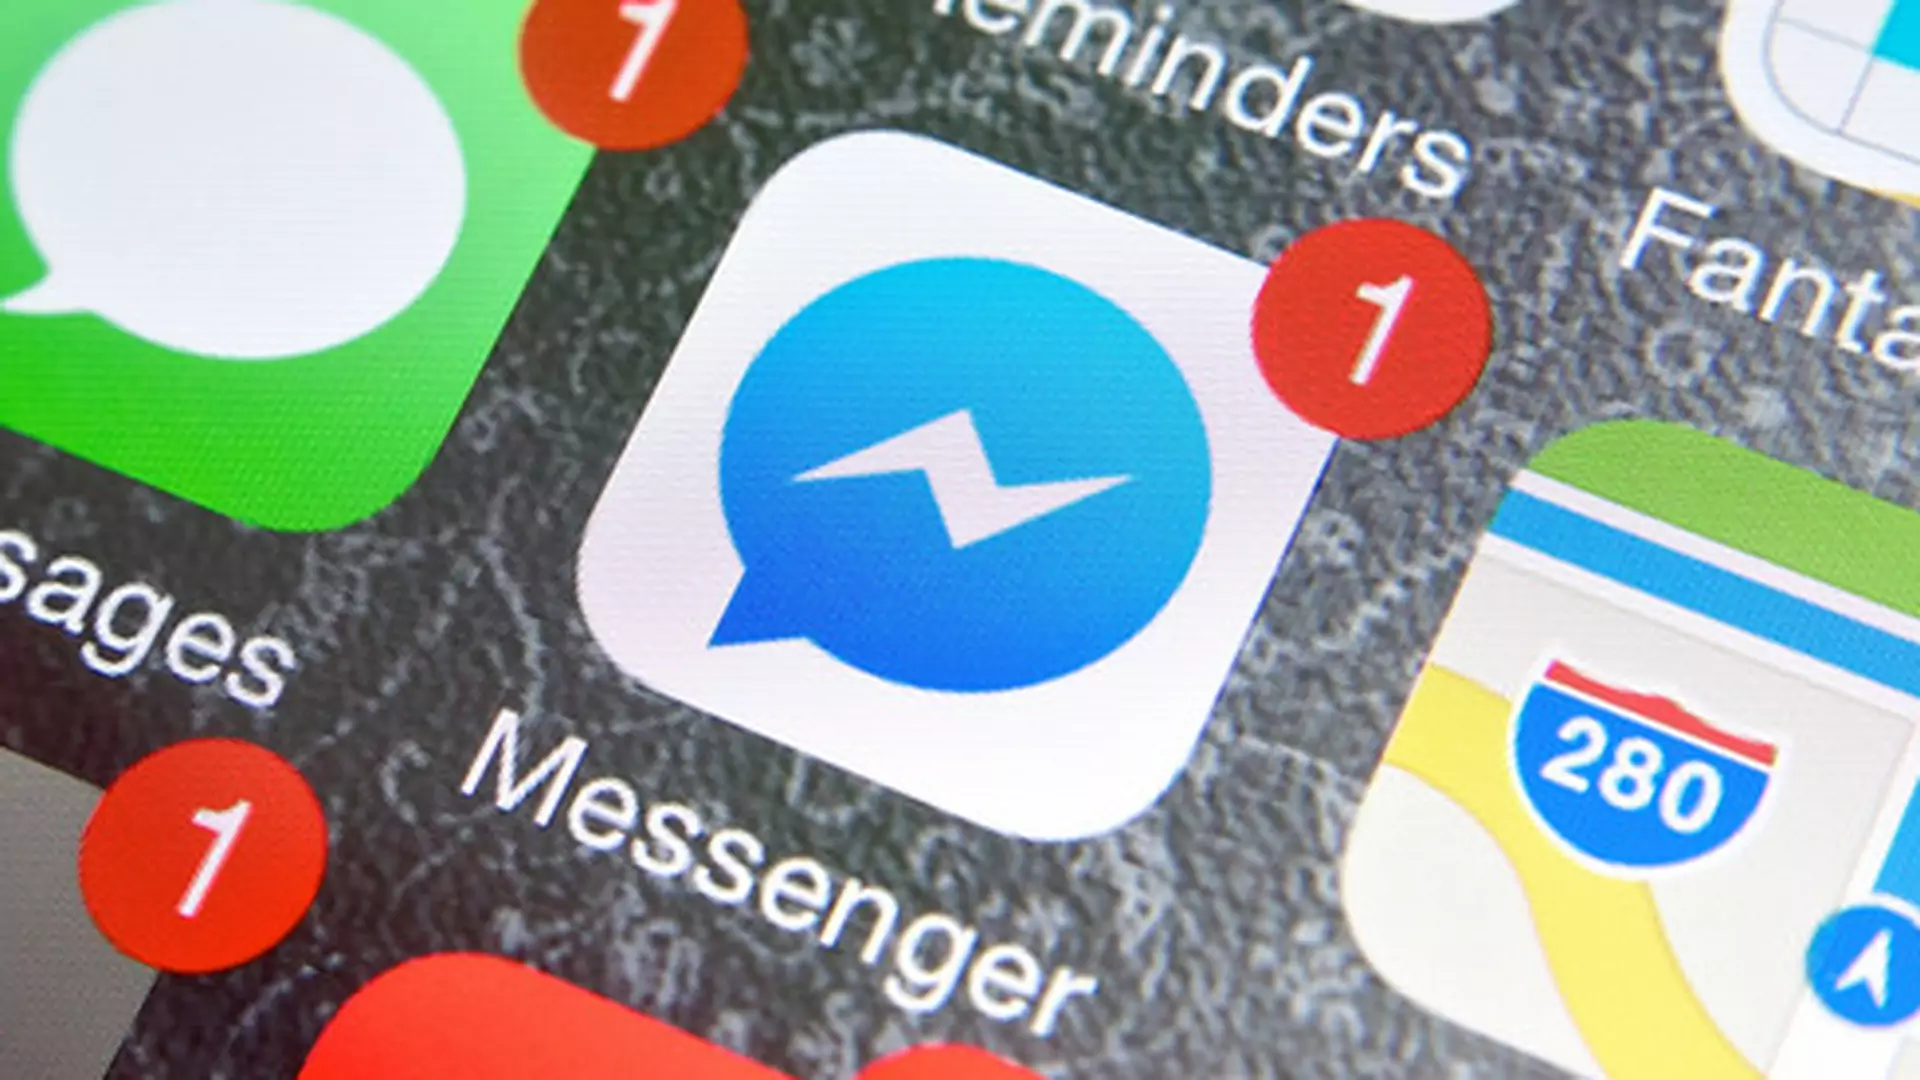 Cel Facebook Messengera na 2017: zniszczyć Snapchata. Nowe funkcje mają mu dać potężną przewagę